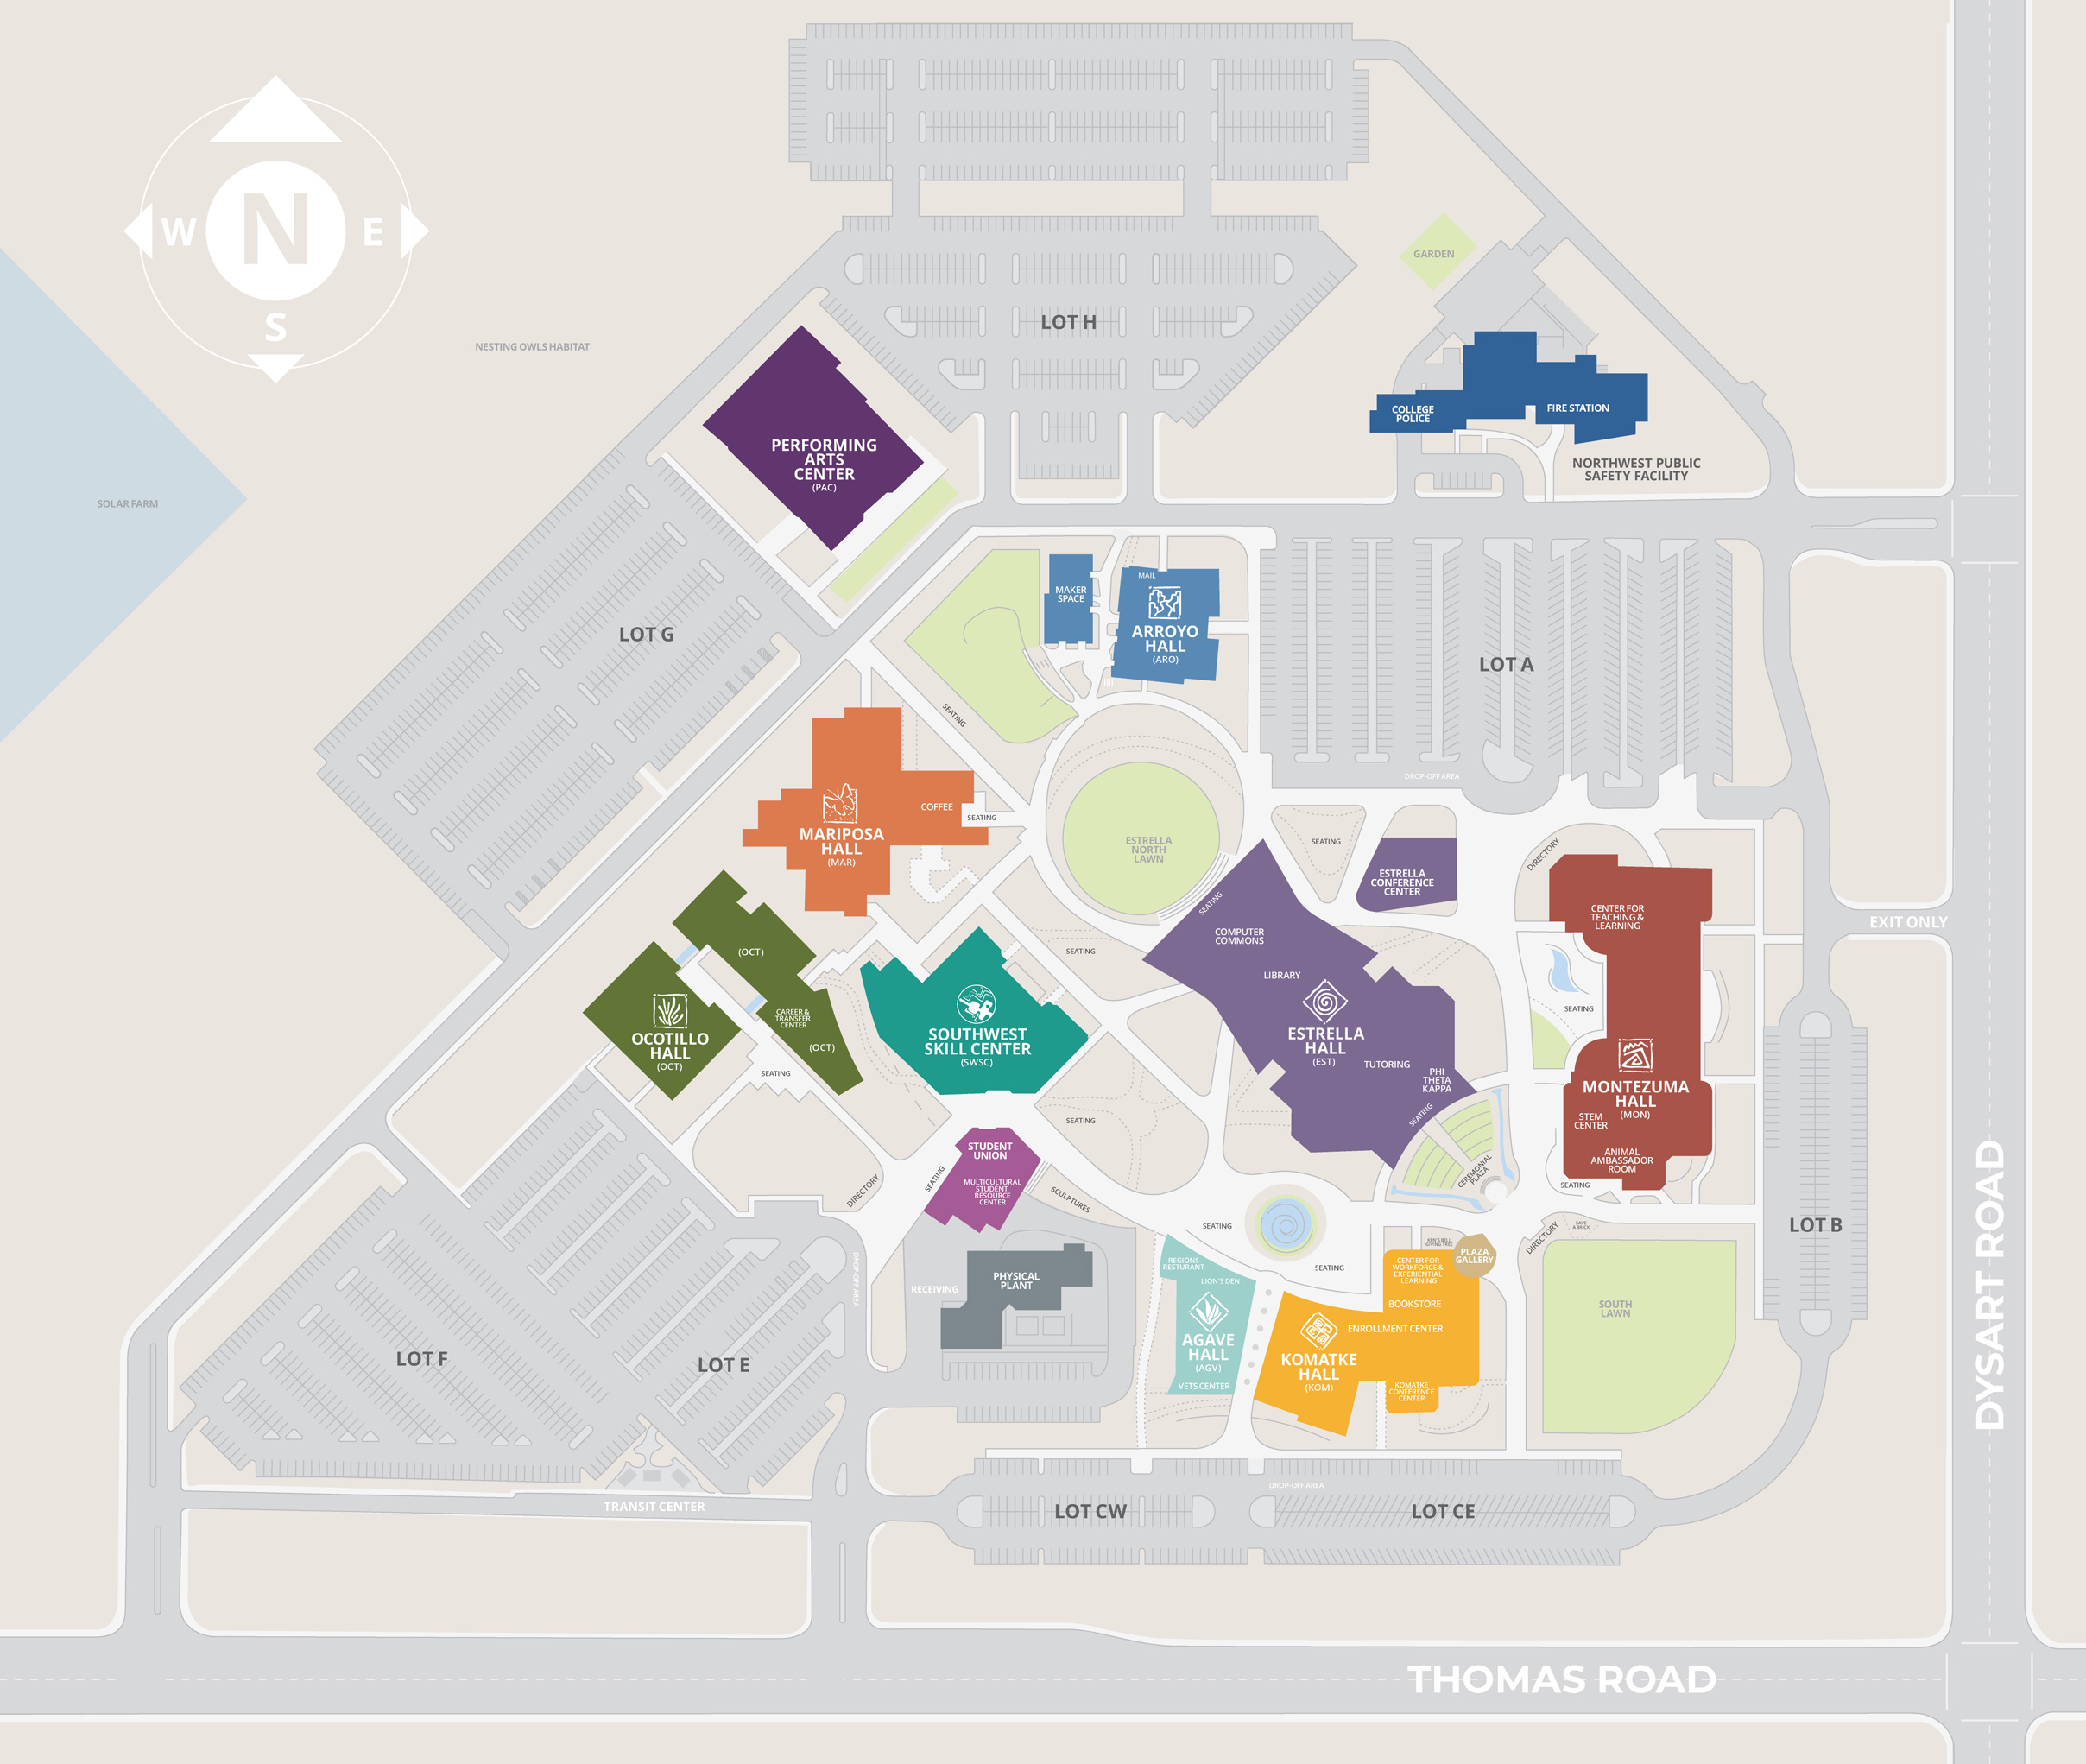 mcc campus map